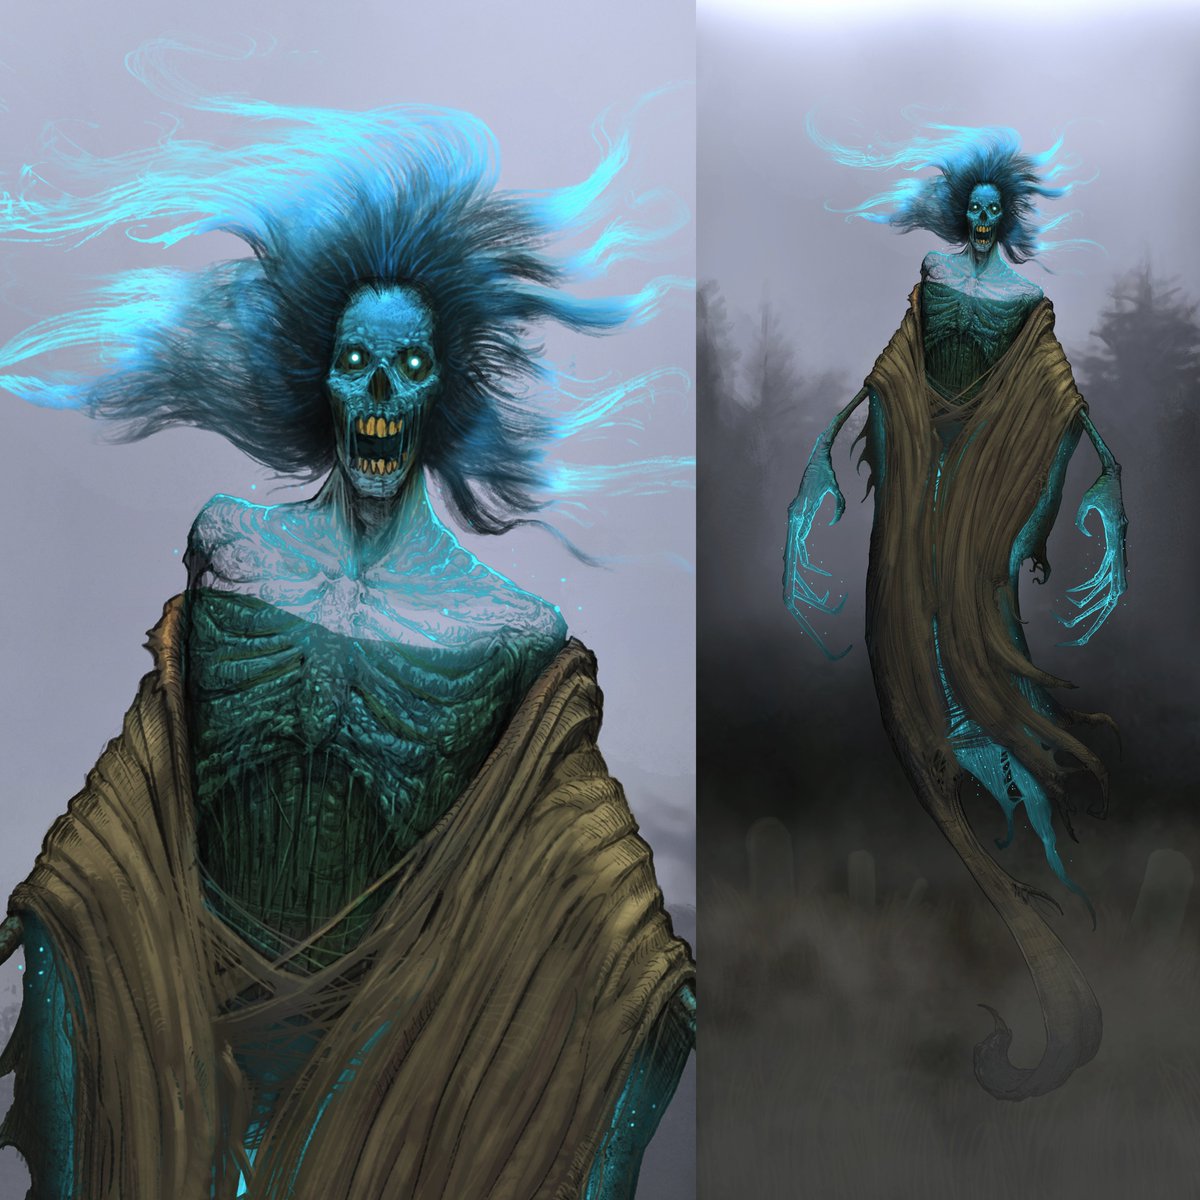 A Wraith for @helloMCDM's New RPG. #ghost #art #ttrpg